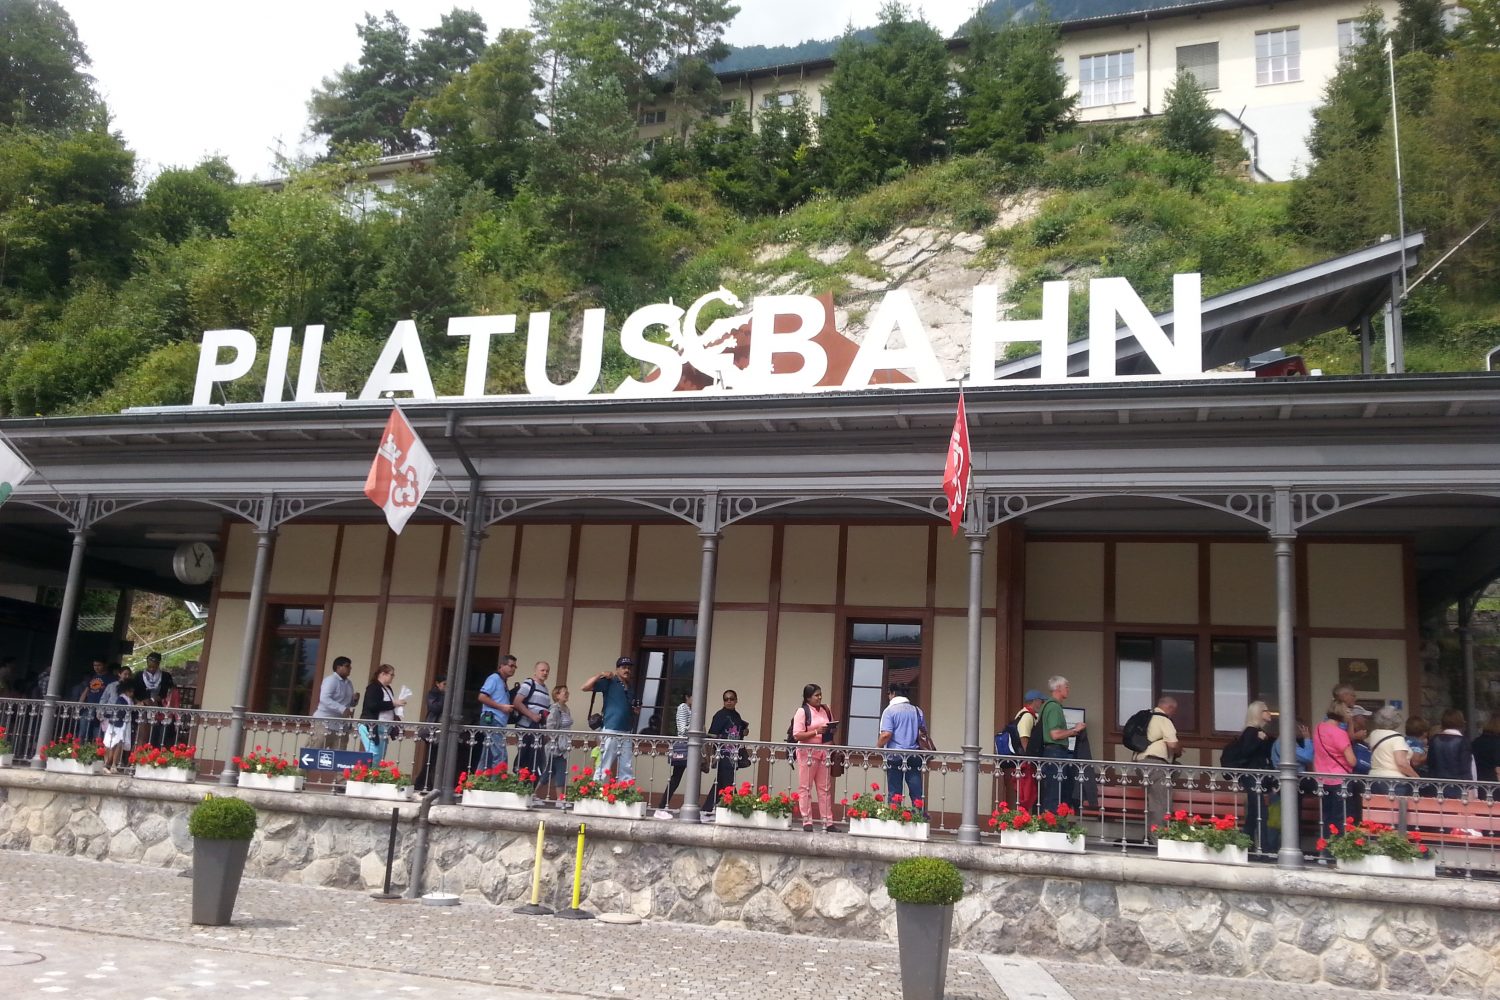 Treinstation van de tandradbaan Pilatus Bahn. De steilste tandradbaan ter wereld.